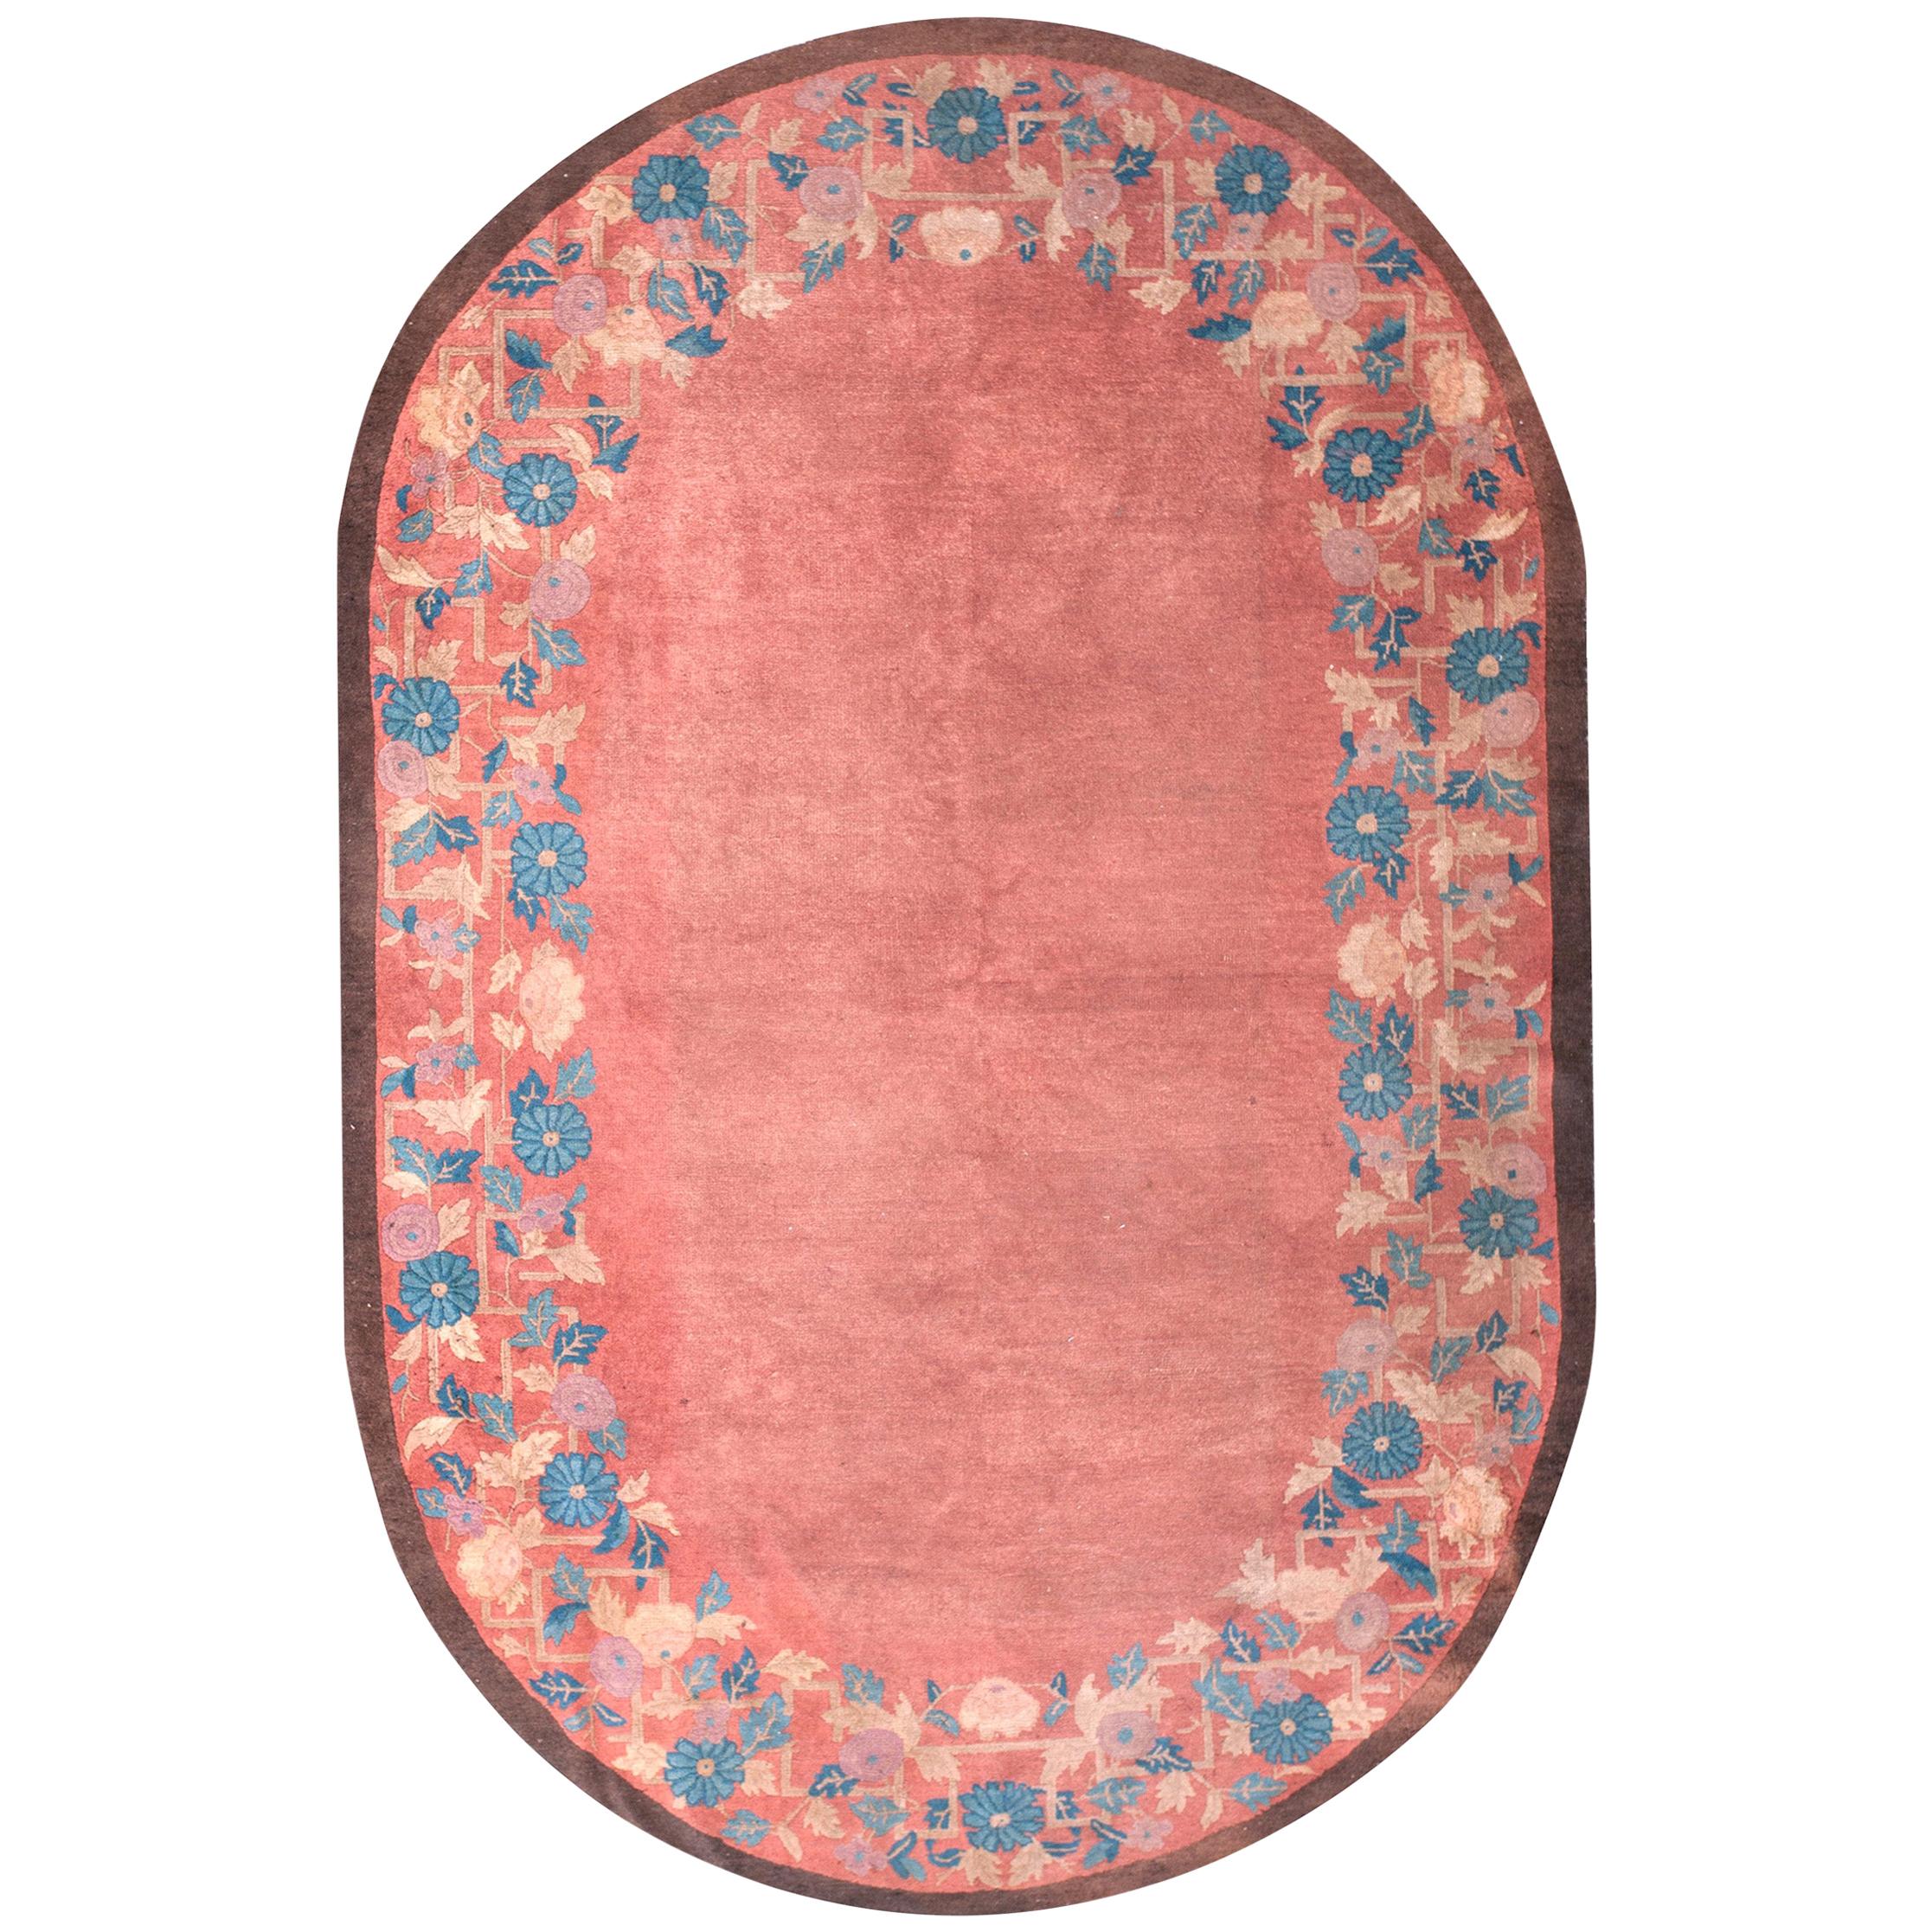 Chinesischer Art-déco-Teppich aus den 1920er Jahren ( 5' x 7'10" - 160 x 238")